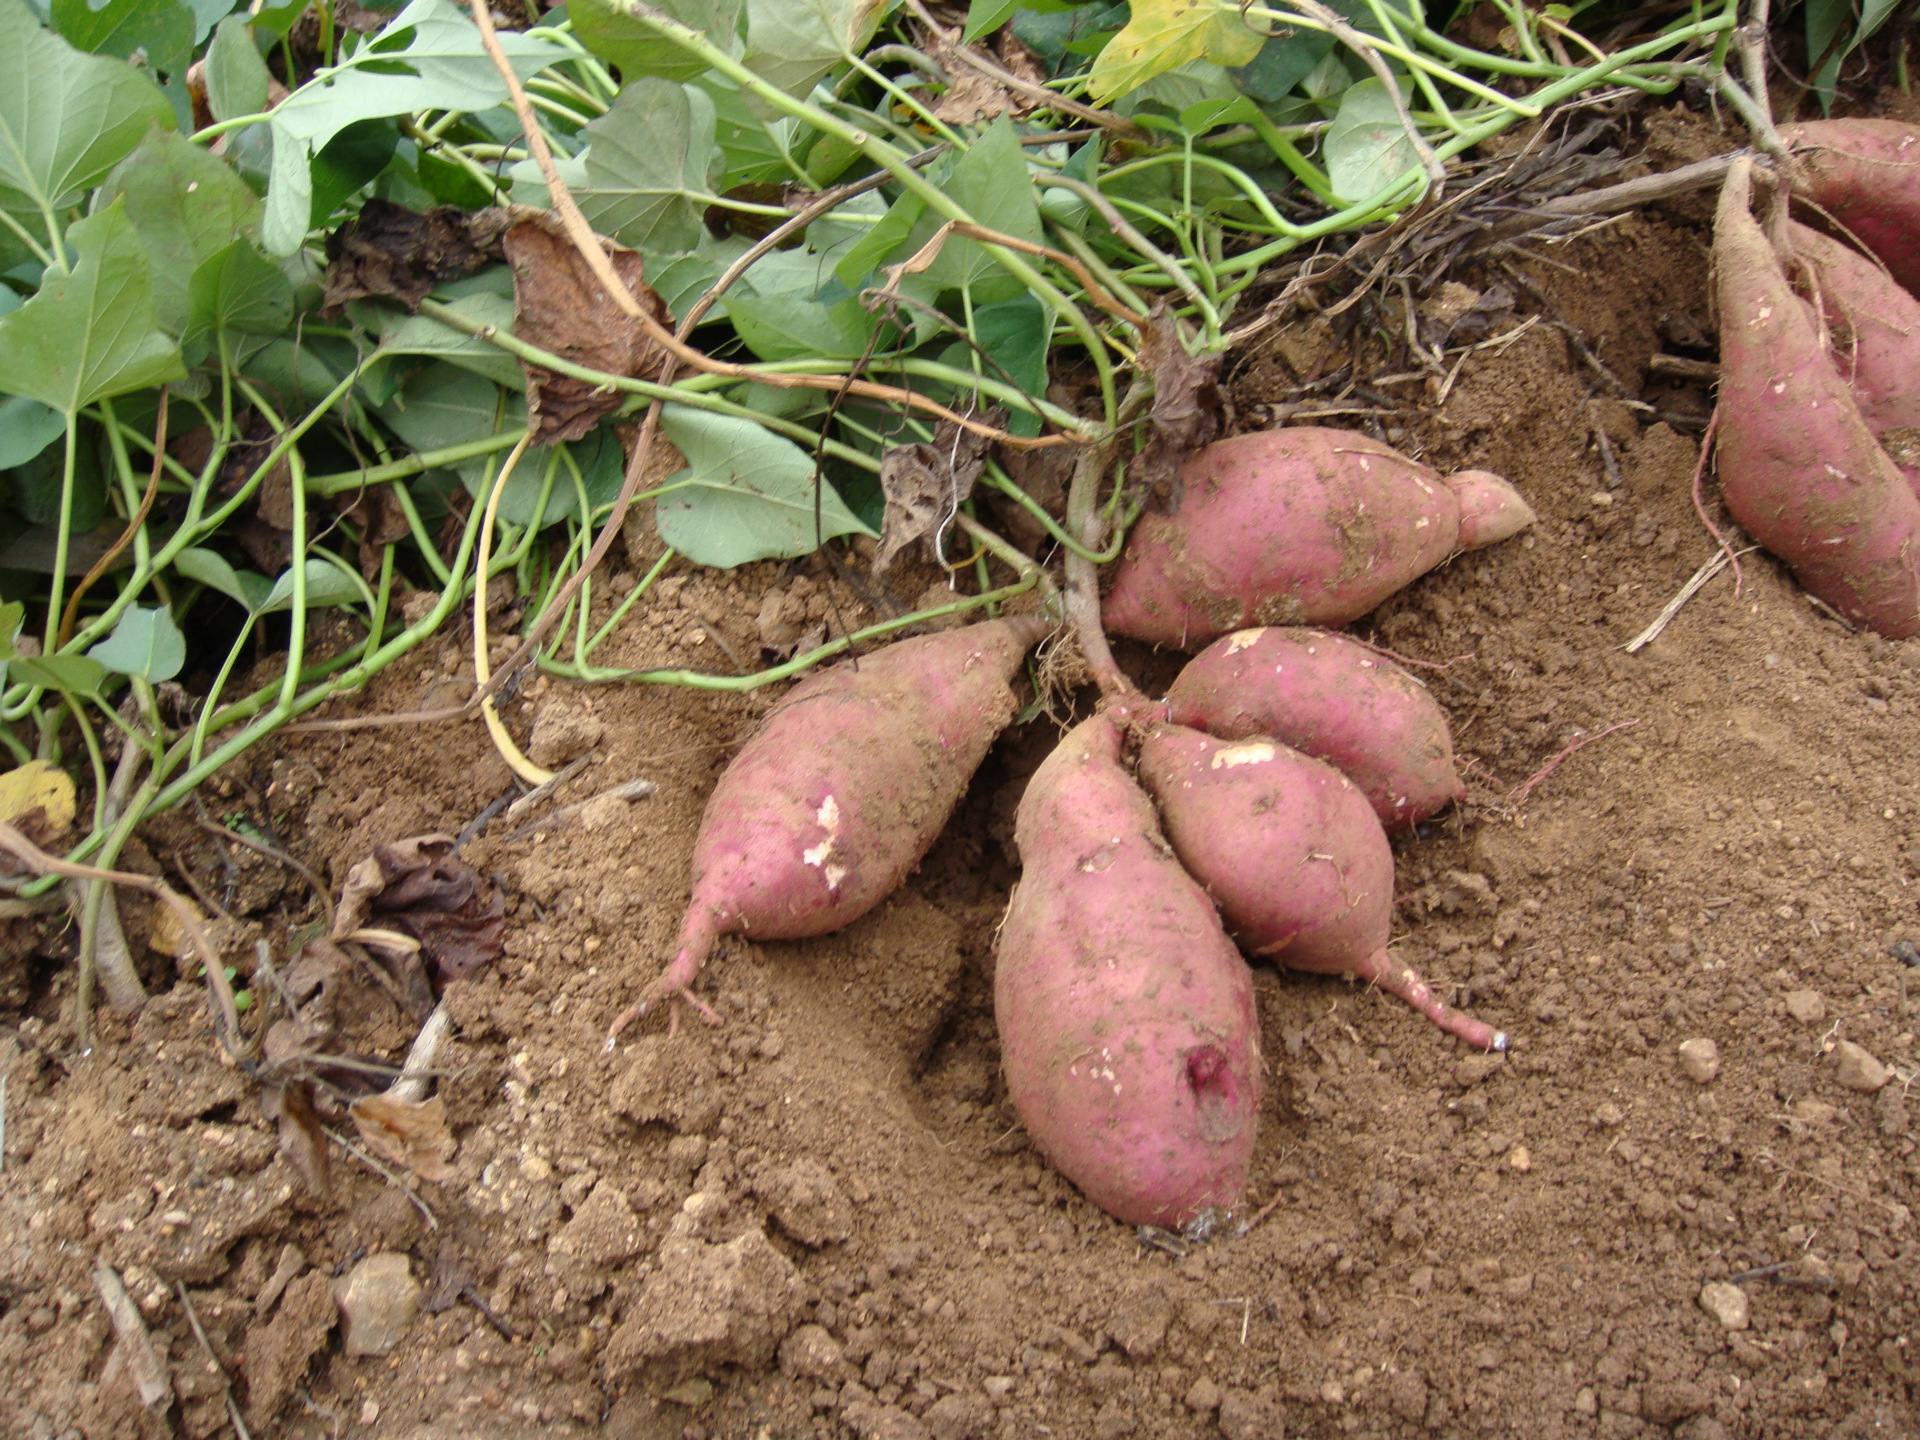 瓦岗镇属浅山丘陵区,其特有的土壤,气候条件适宜红薯的生长,出产的